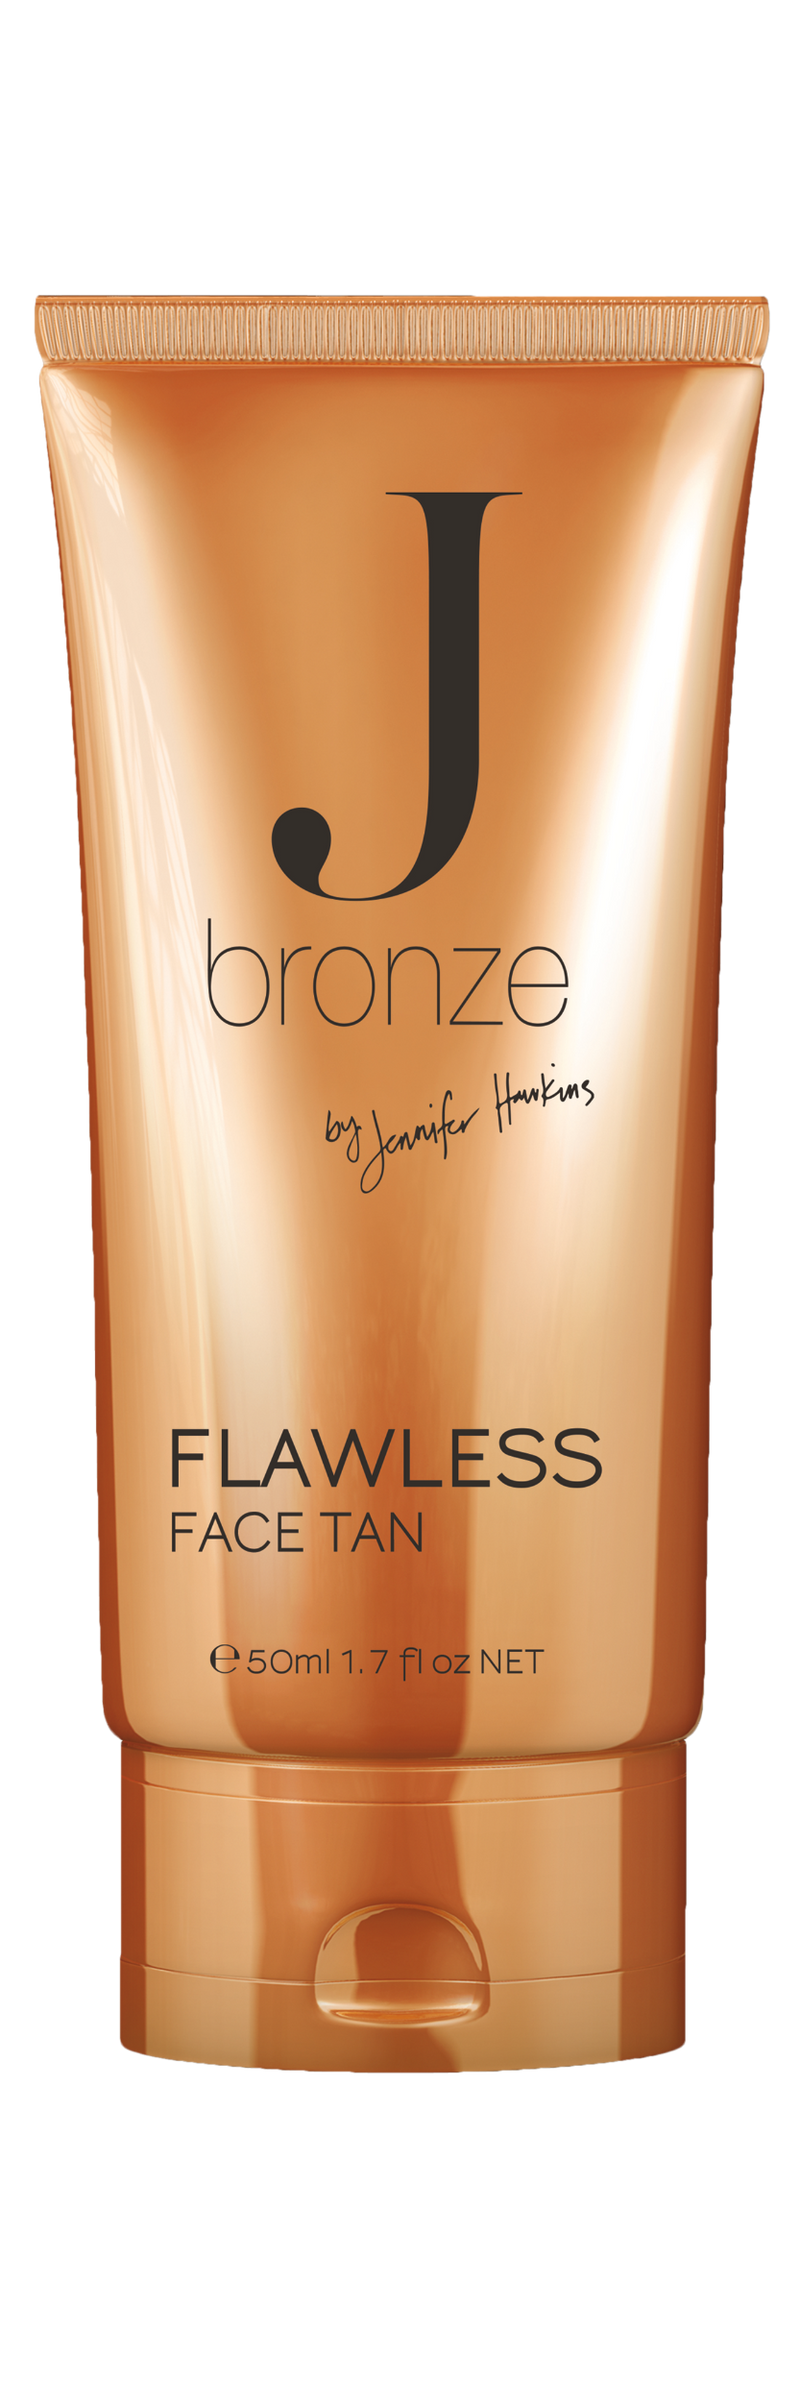 Flawless Face Tan